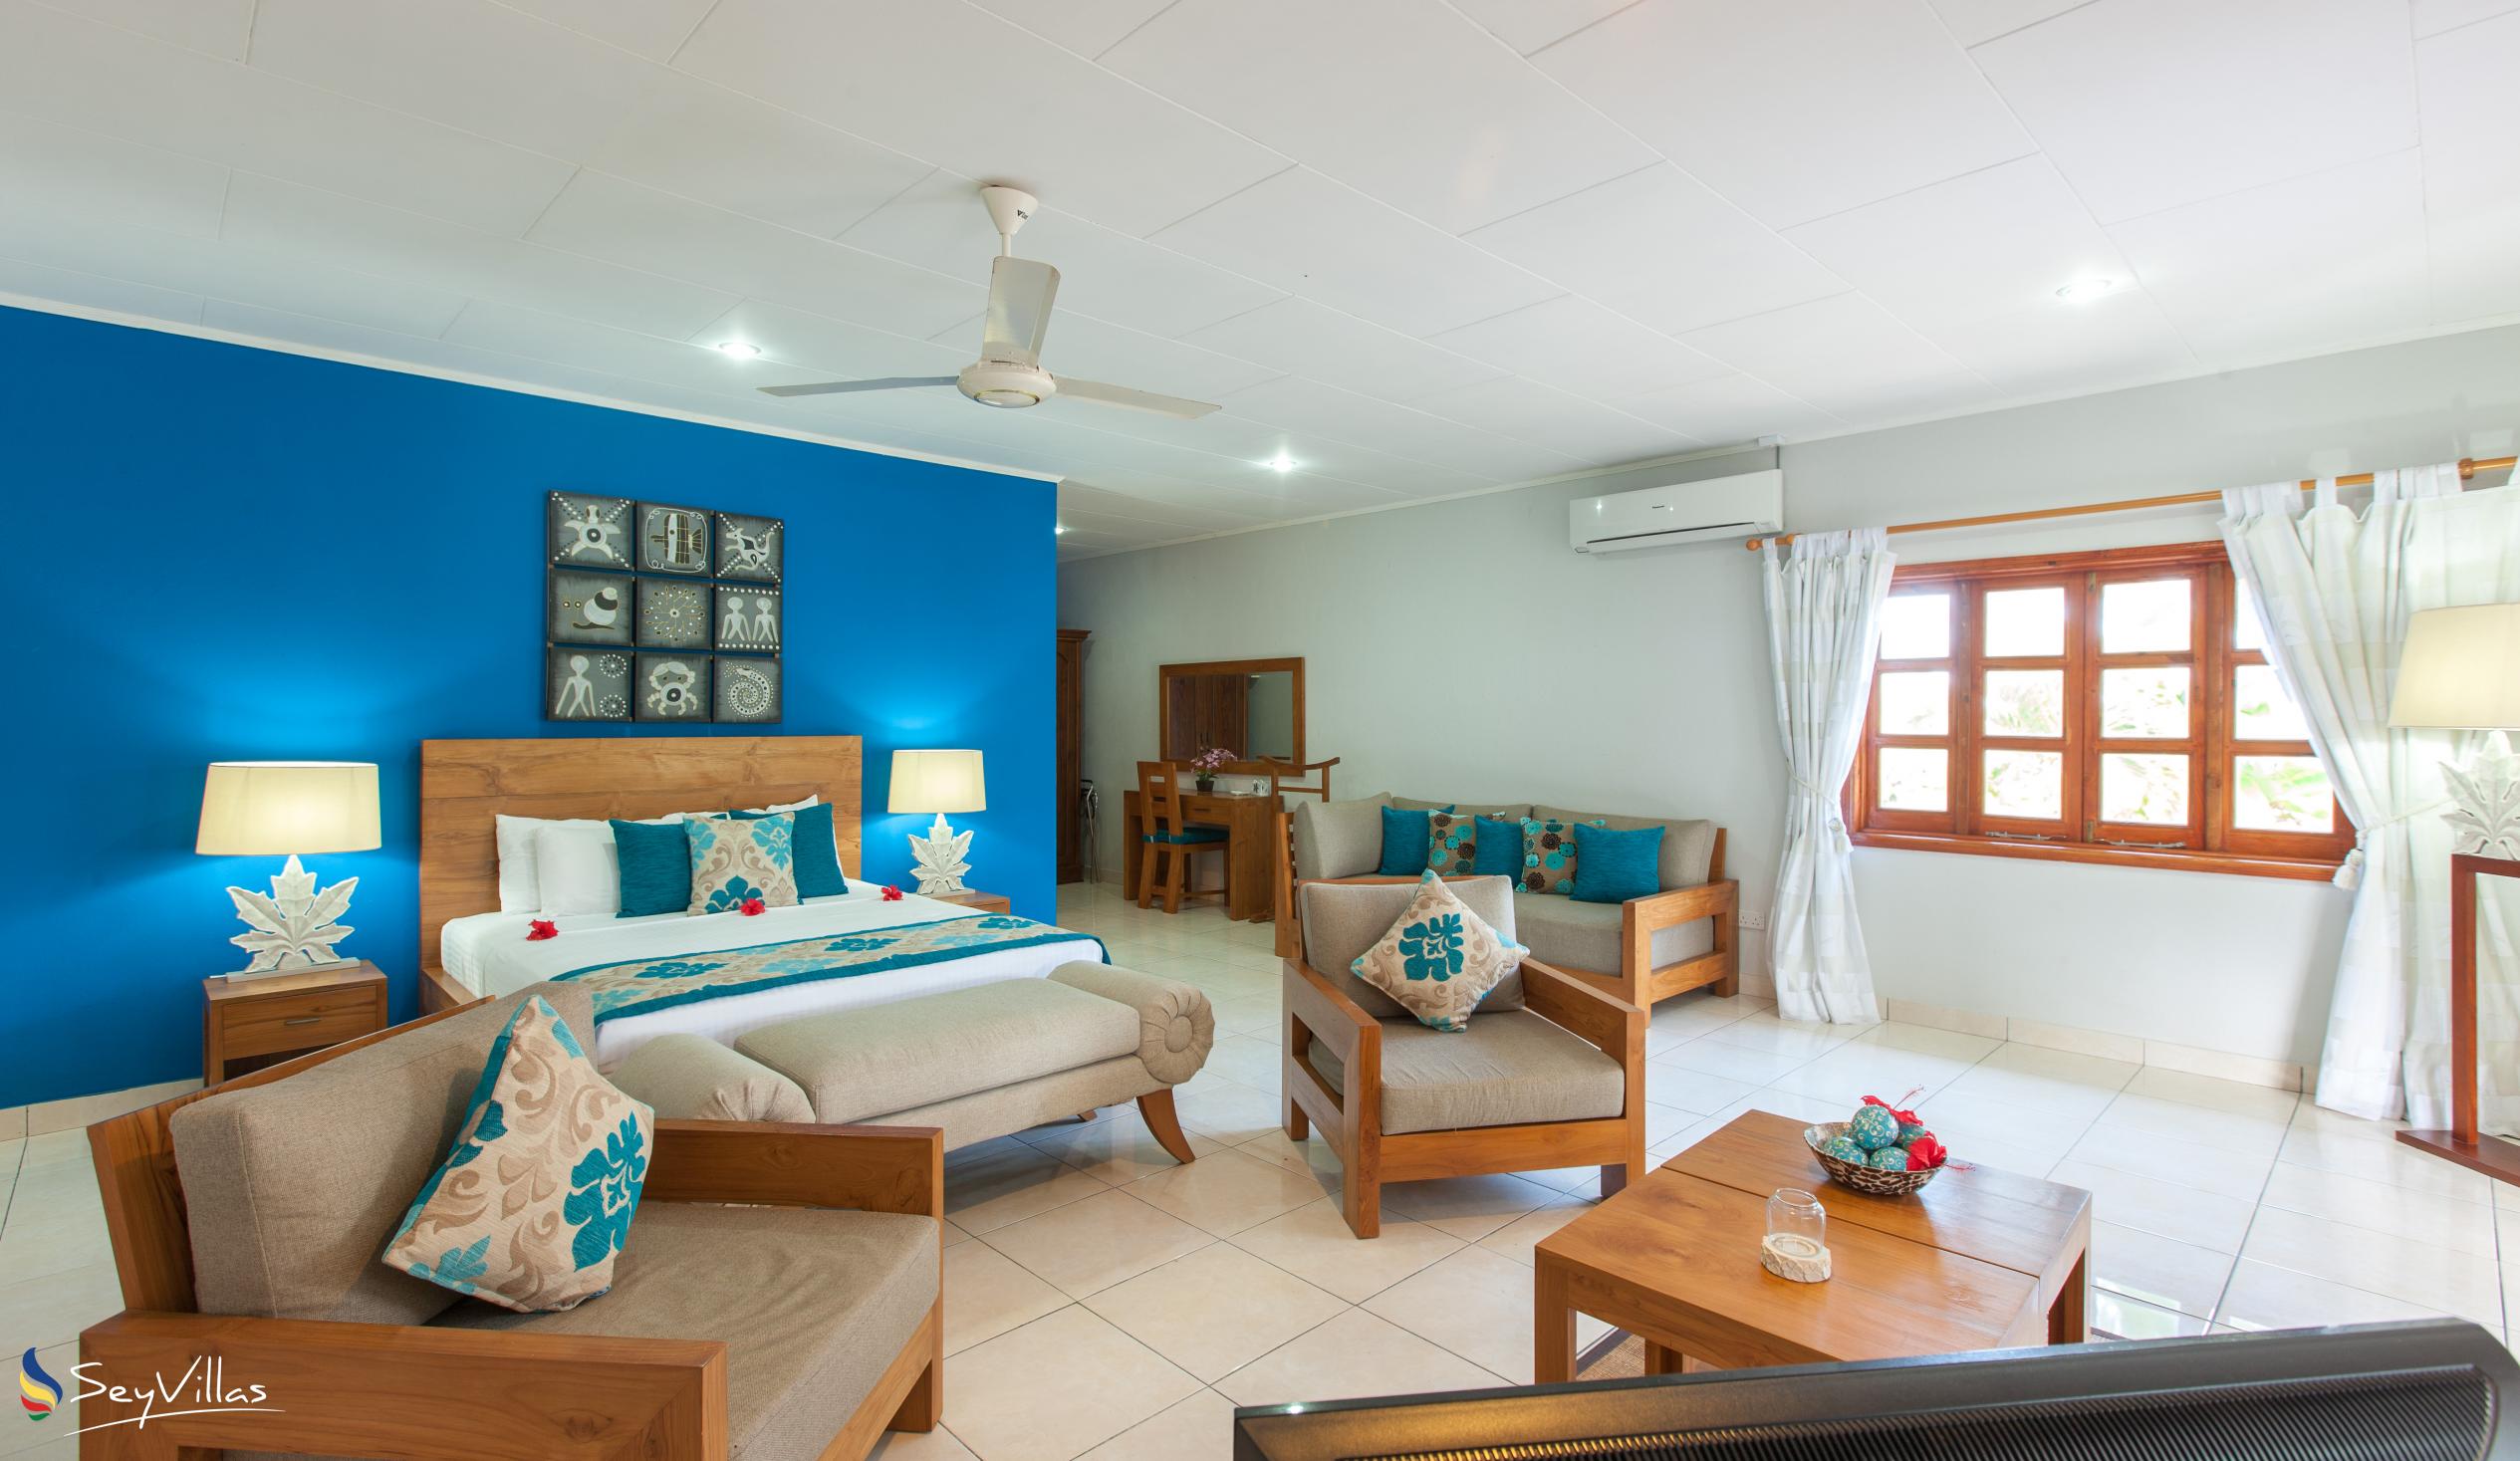 Foto 38: Villas de Mer - Suite Junior - Praslin (Seychelles)